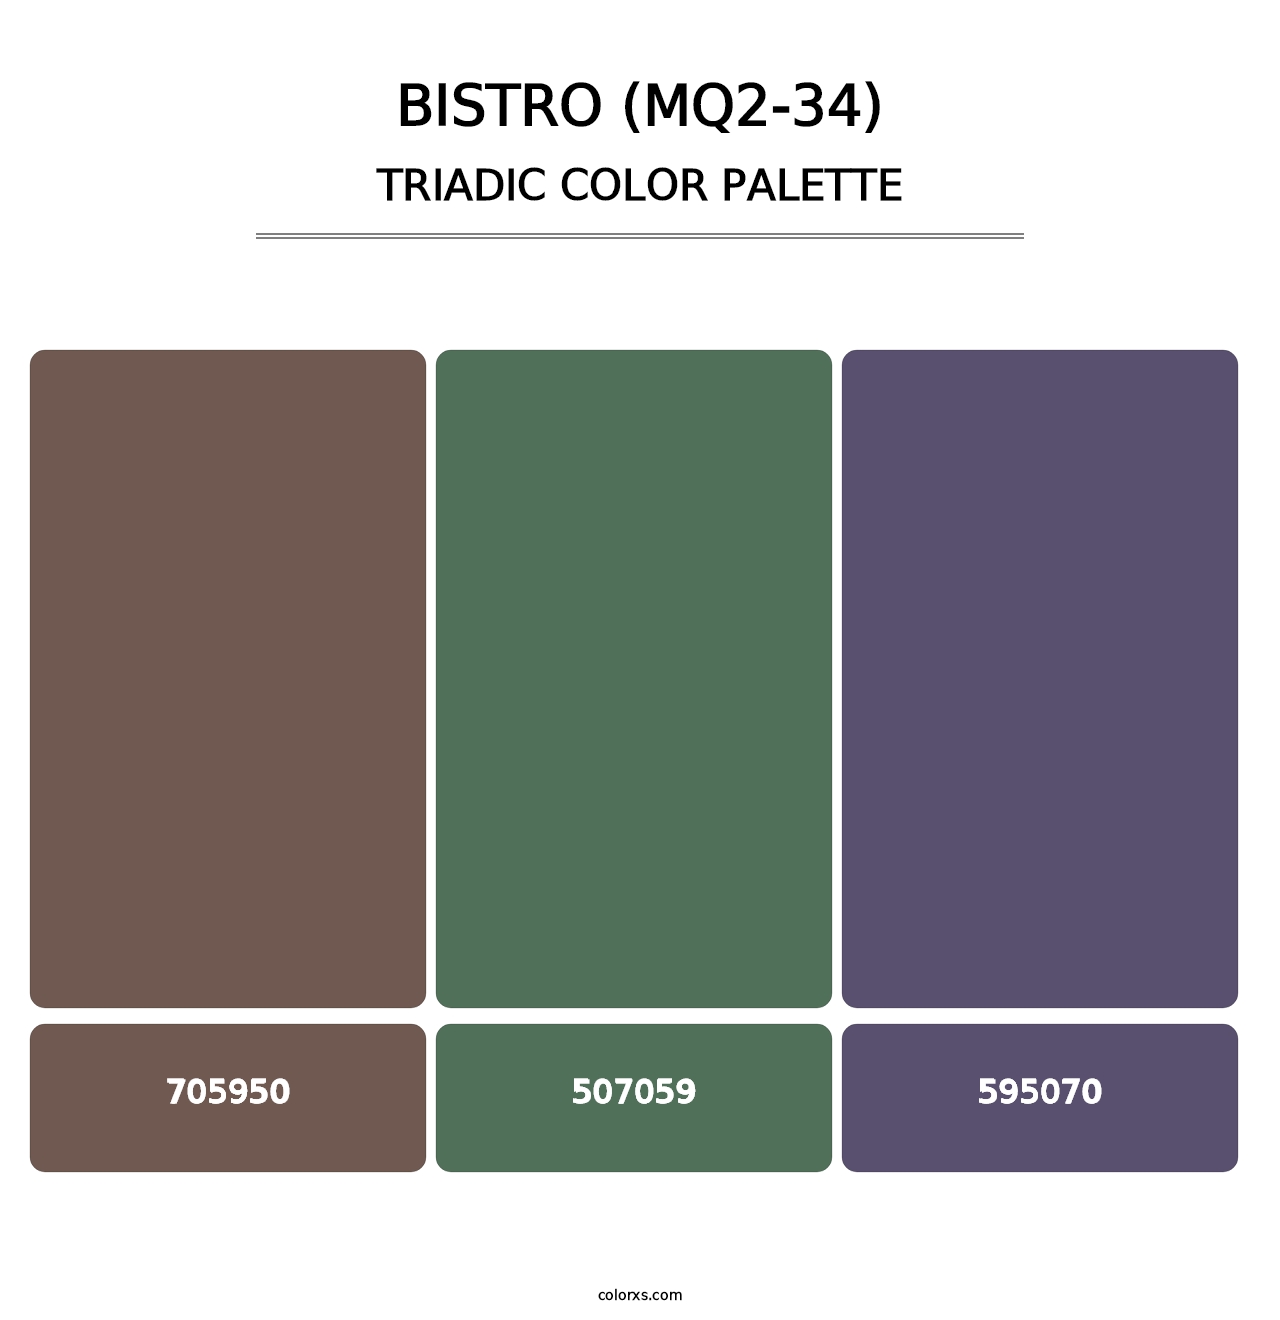 Bistro (MQ2-34) - Triadic Color Palette